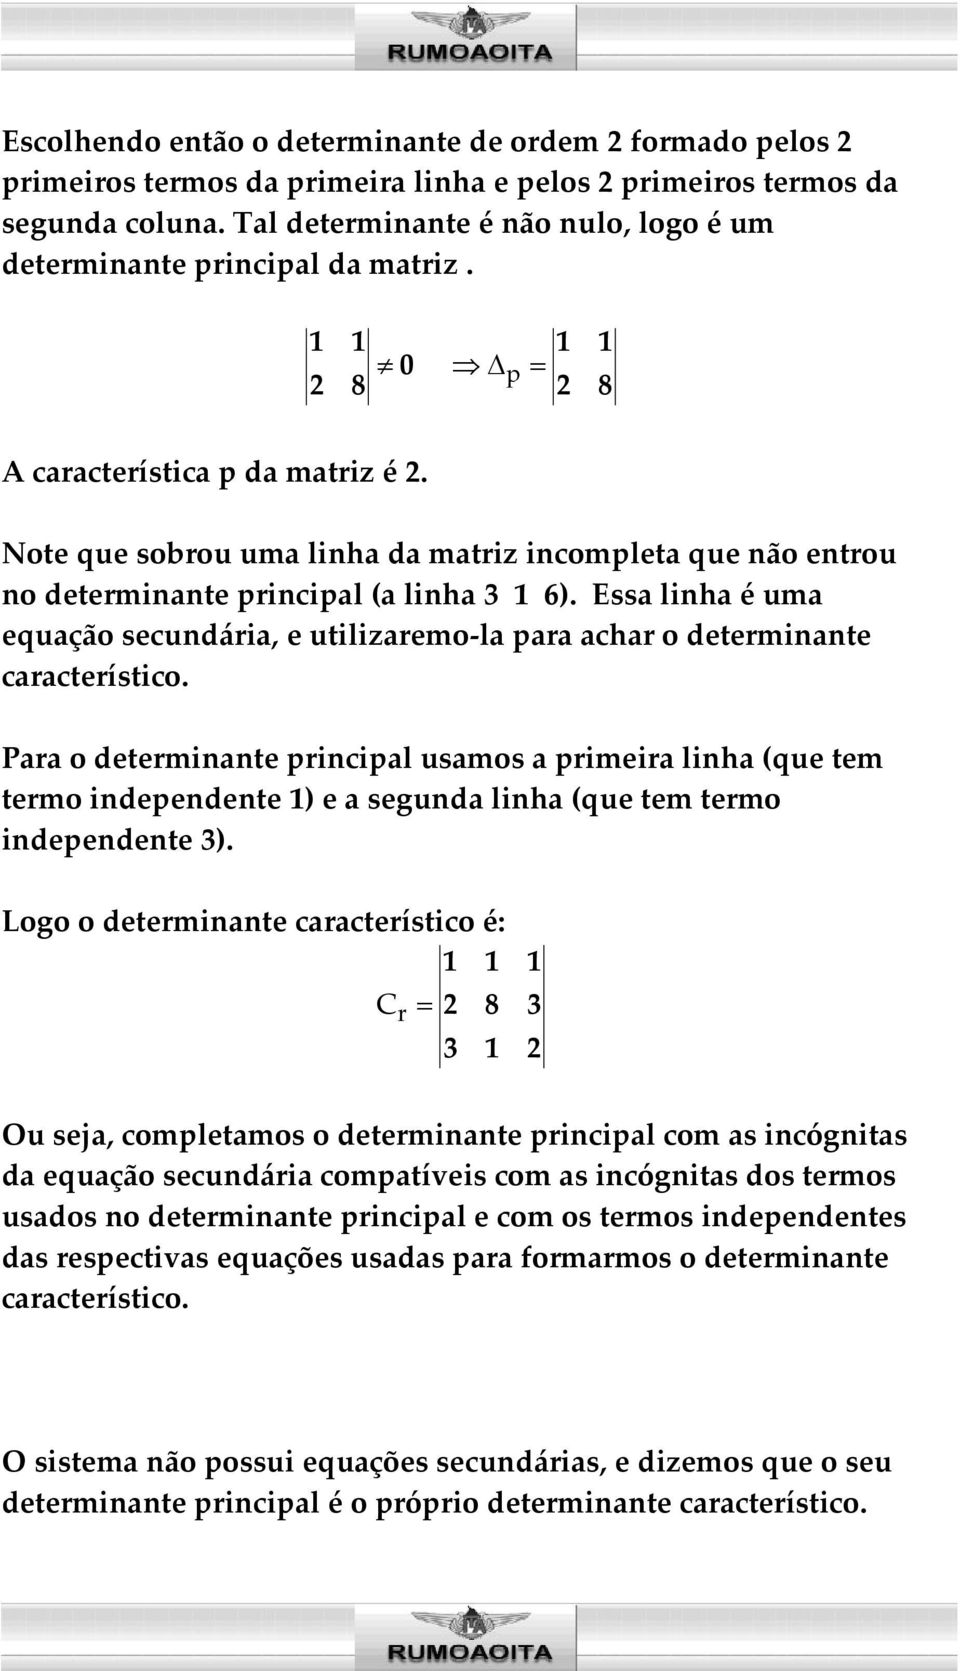 Note que sobrou uma linha da matriz incompleta que não entrou no determinante principal (a linha 3 1 6). Essa linha é uma equação secundária, e utilizaremo-la para achar o determinante característico.